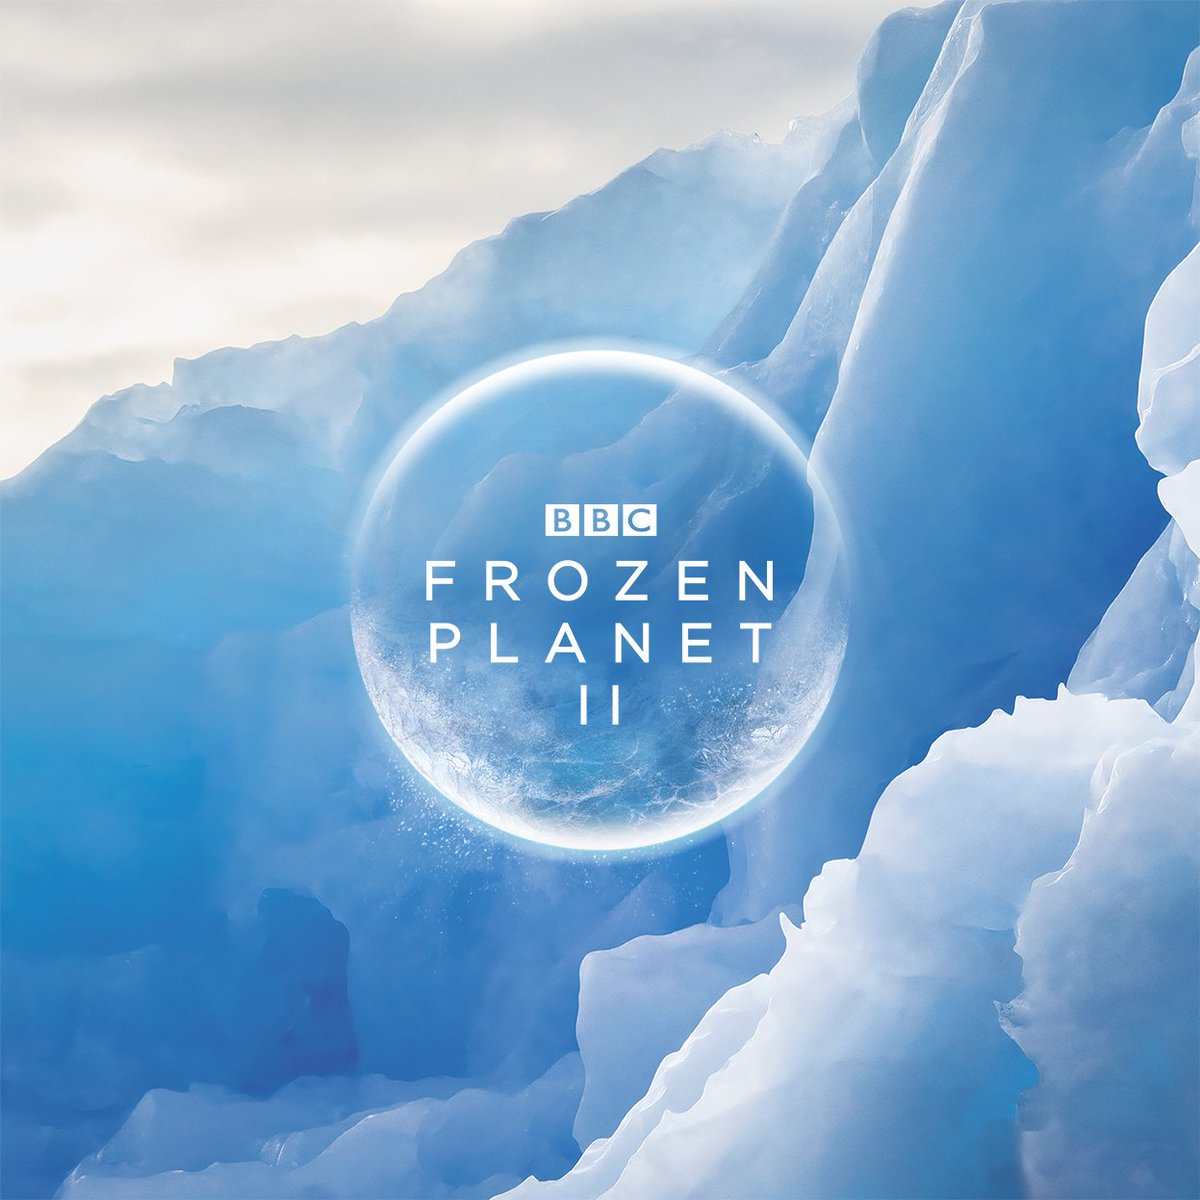 Frozen Planet II 2022